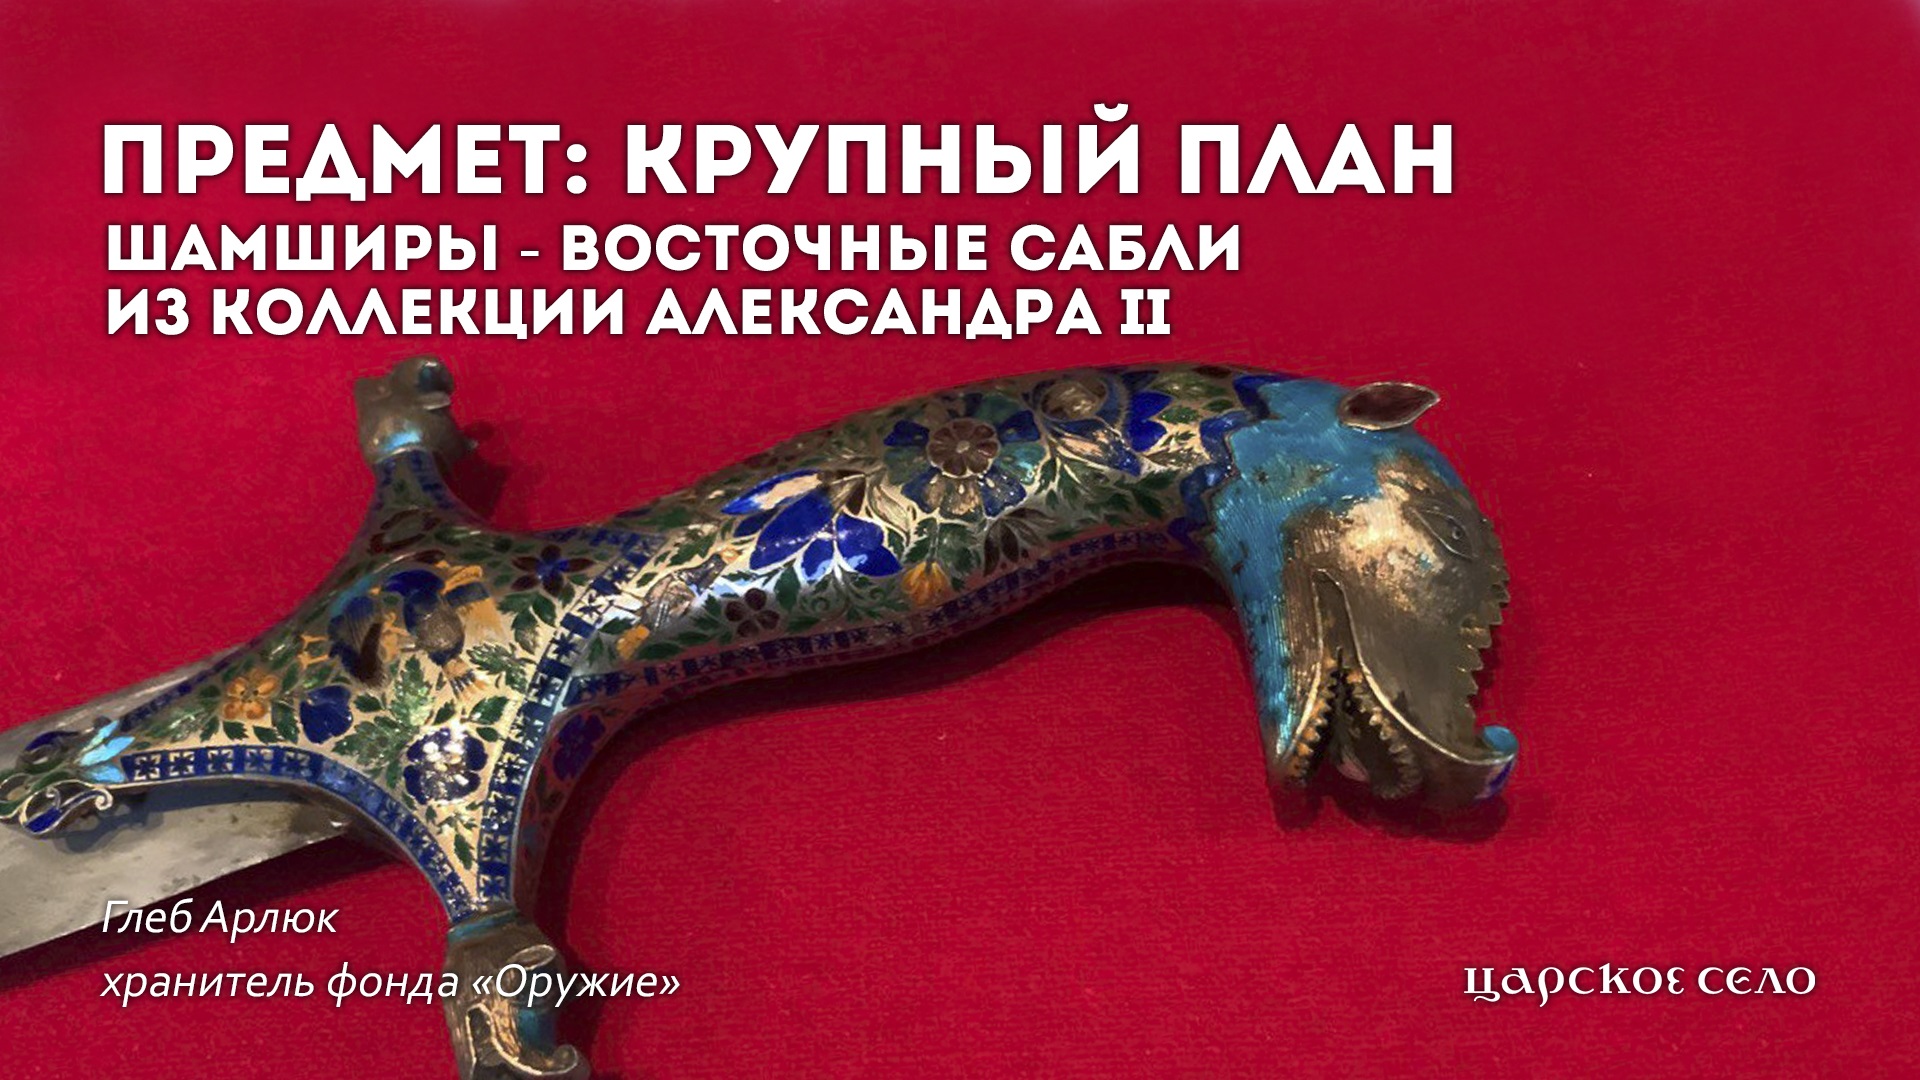 Шамширы - восточные сабли Александра II | Предмет: крупный план